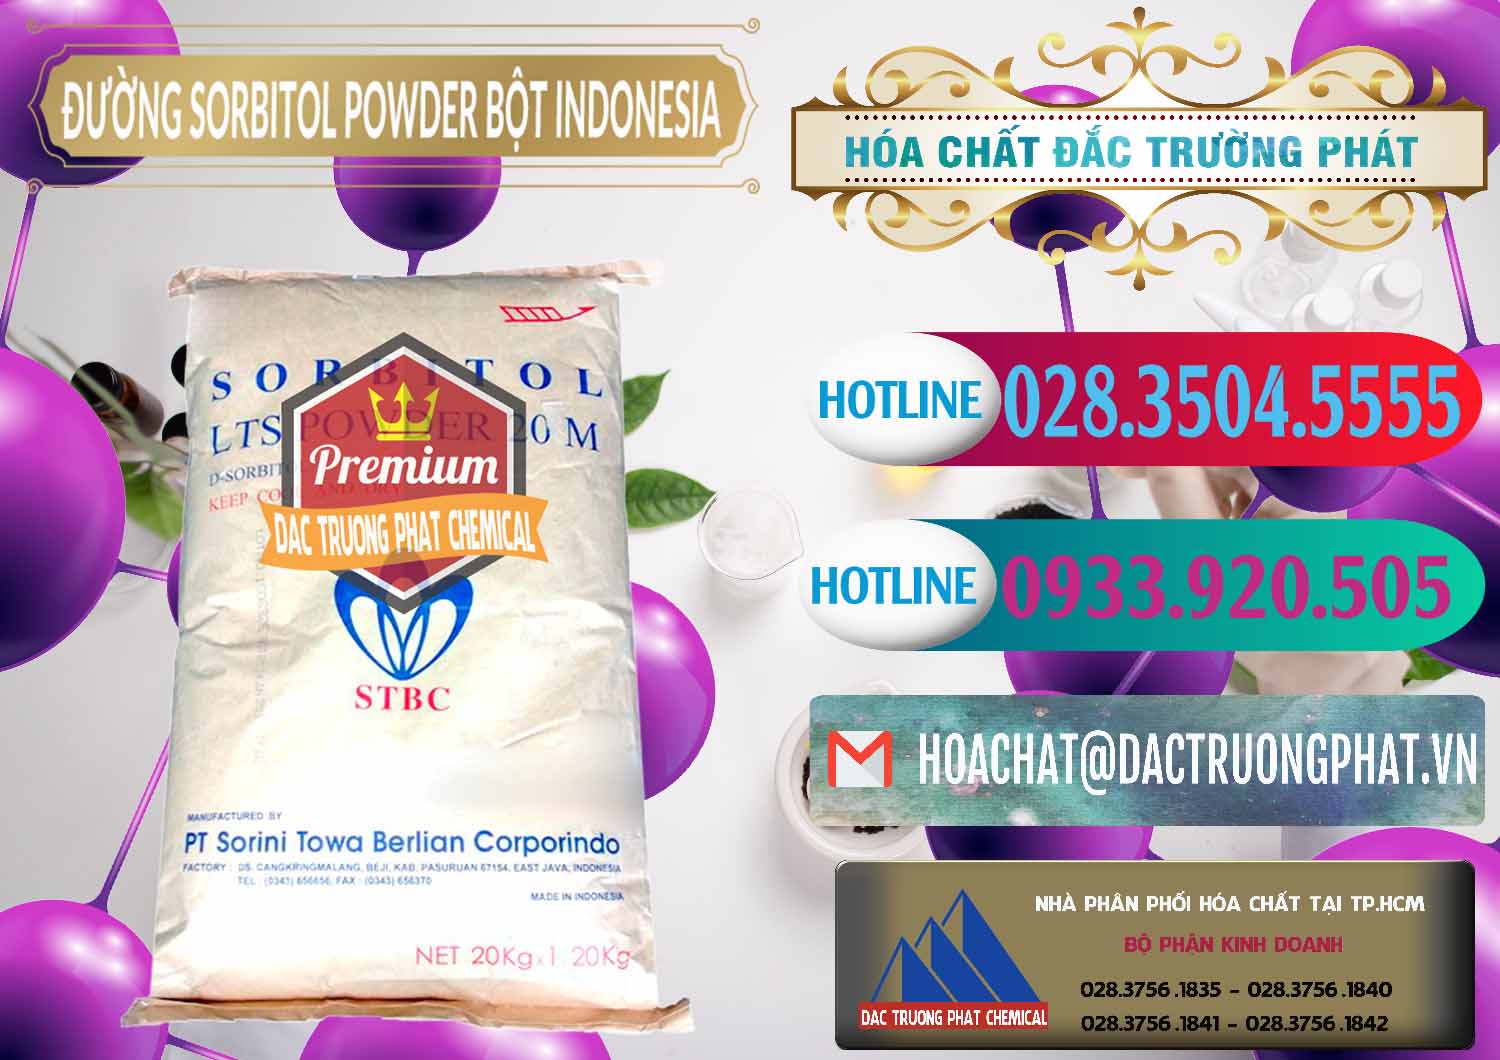 Cty chuyên nhập khẩu & bán D-Sorbitol Bột - C6H14O6 Food Grade Indonesia - 0320 - Nơi phân phối - cung cấp hóa chất tại TP.HCM - truongphat.vn